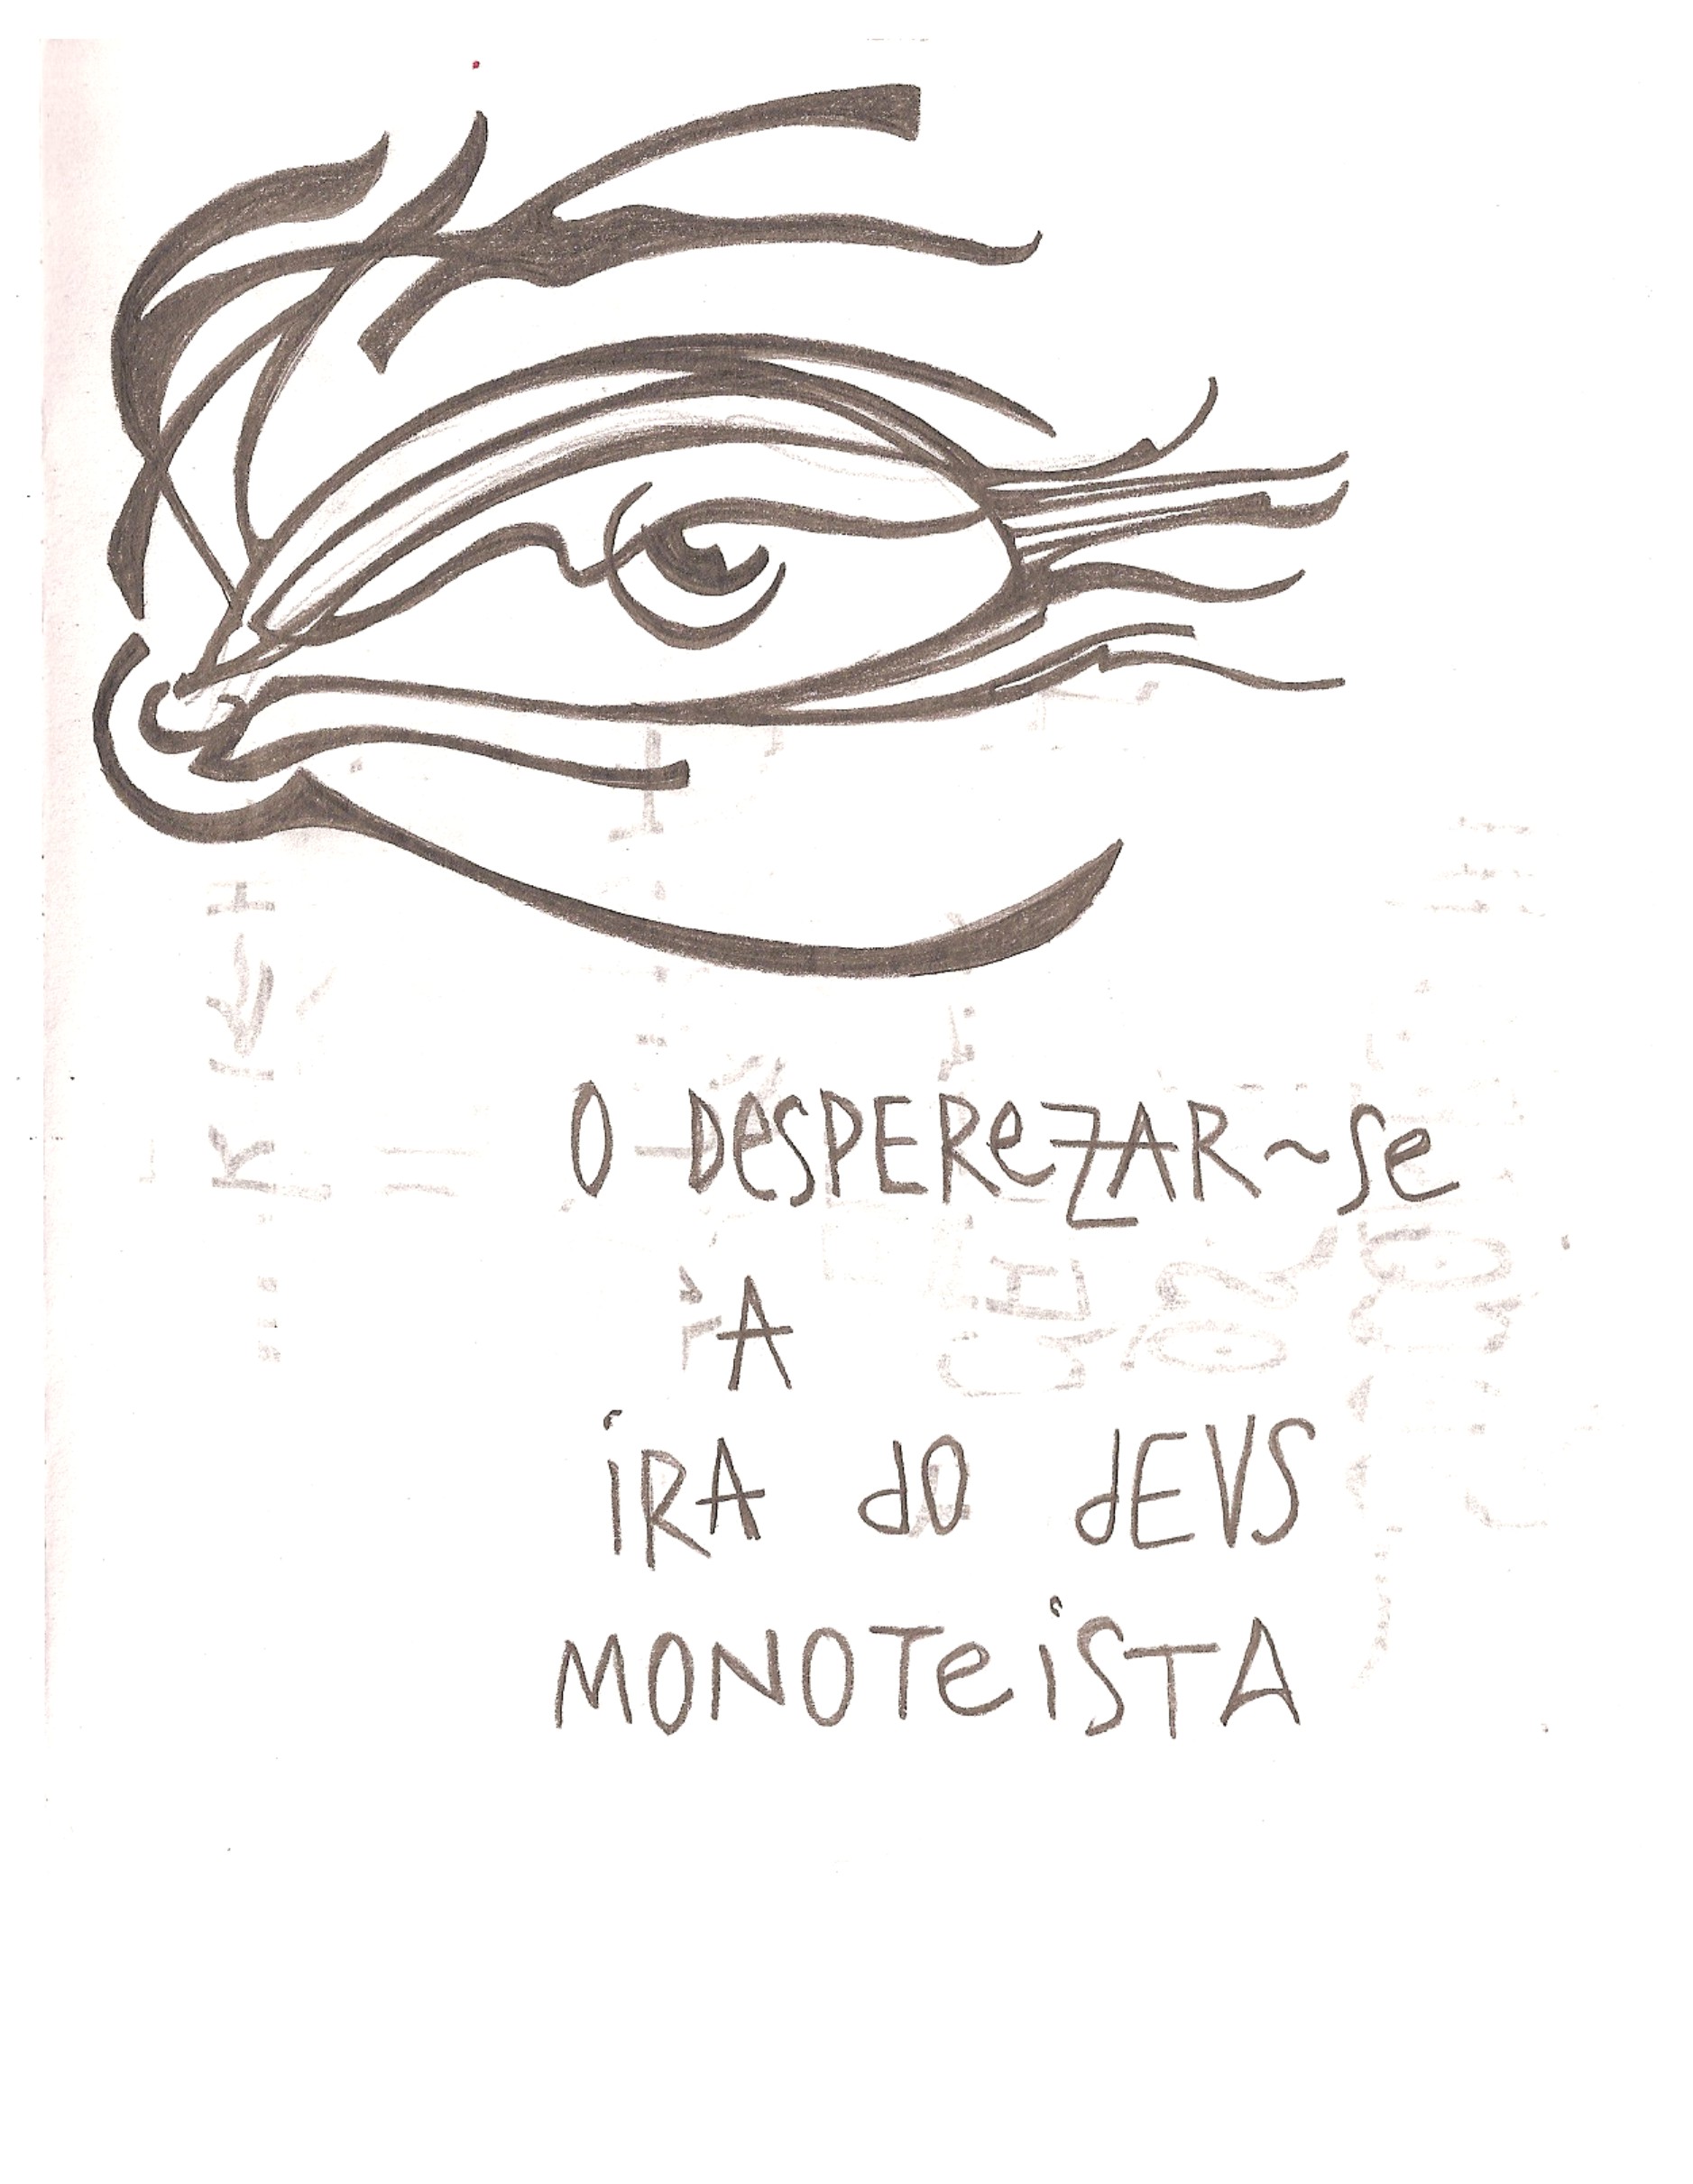 Ladislau da Regueira | Caderno d'Anotações | Um deus monoteista e a Ira (2007)